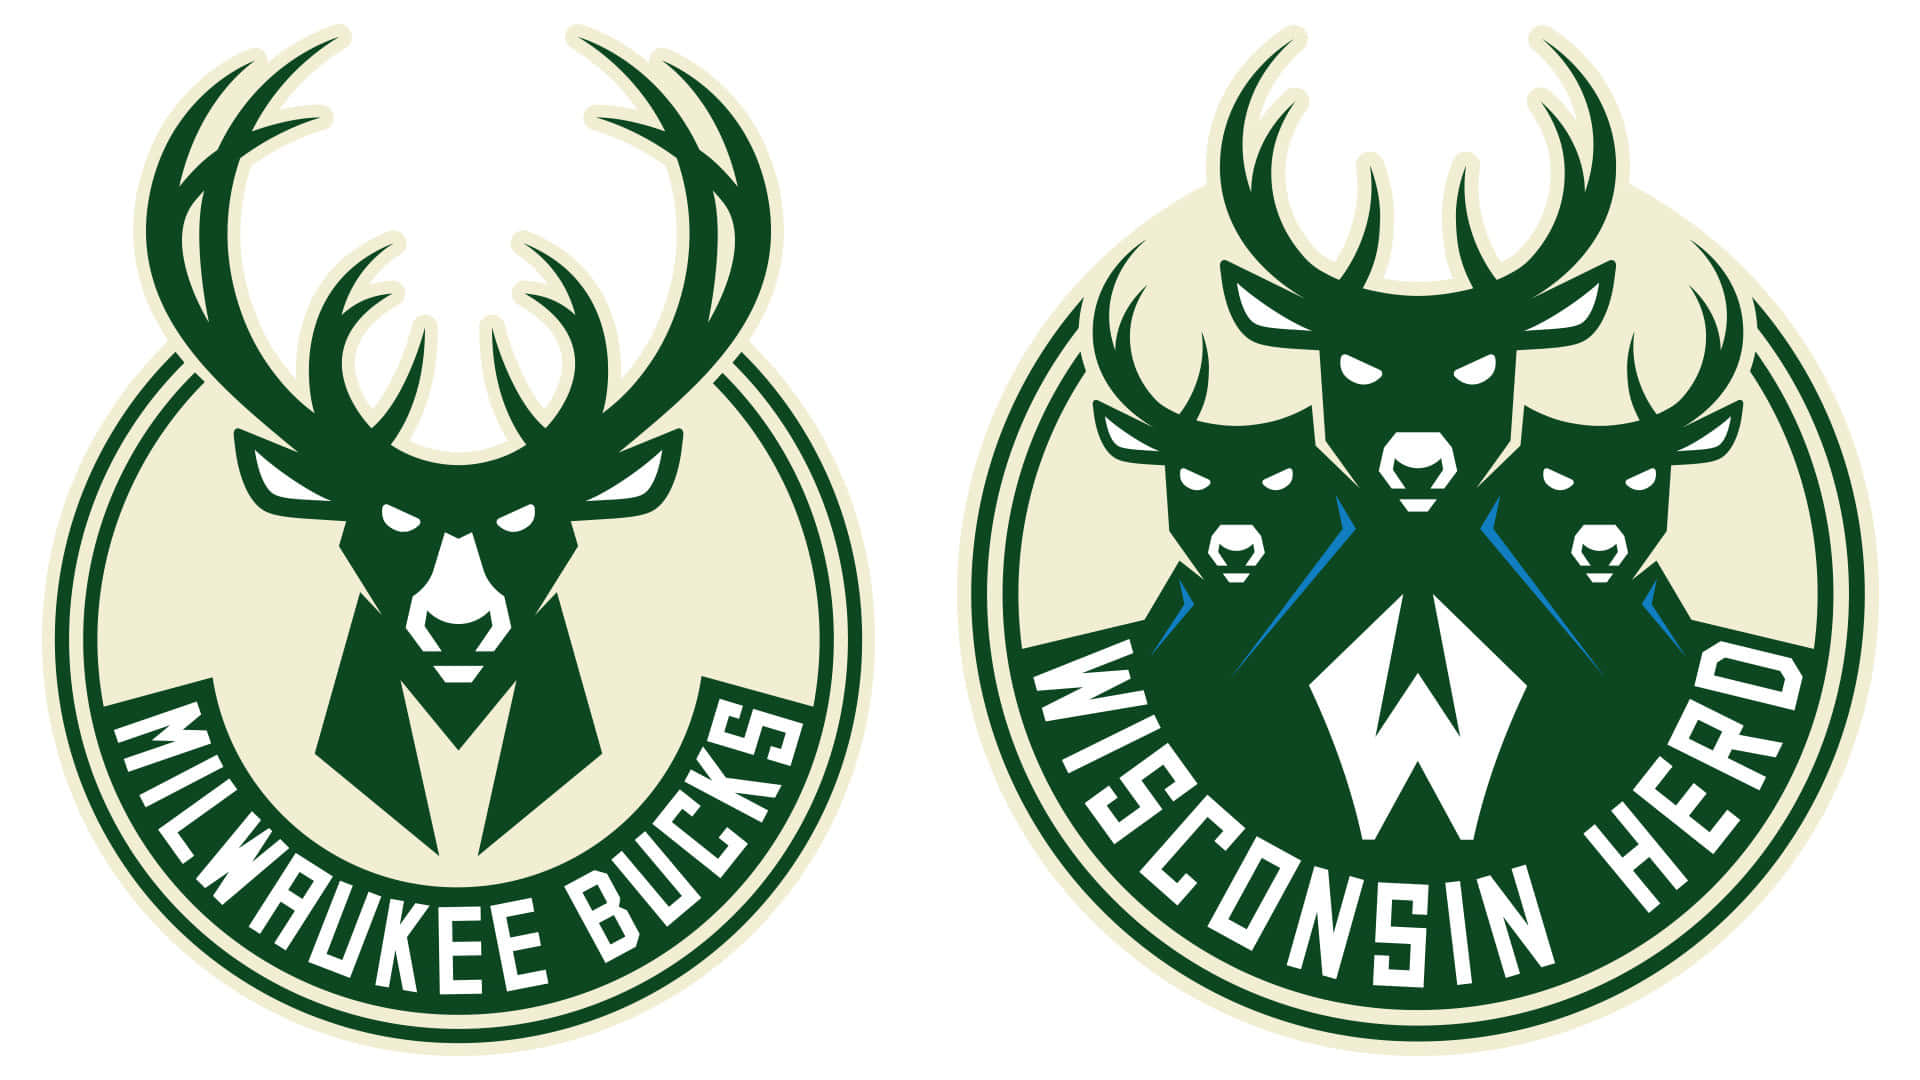 Det officielle logo for Milwaukee Bucks dekorerer denne tapet. Wallpaper